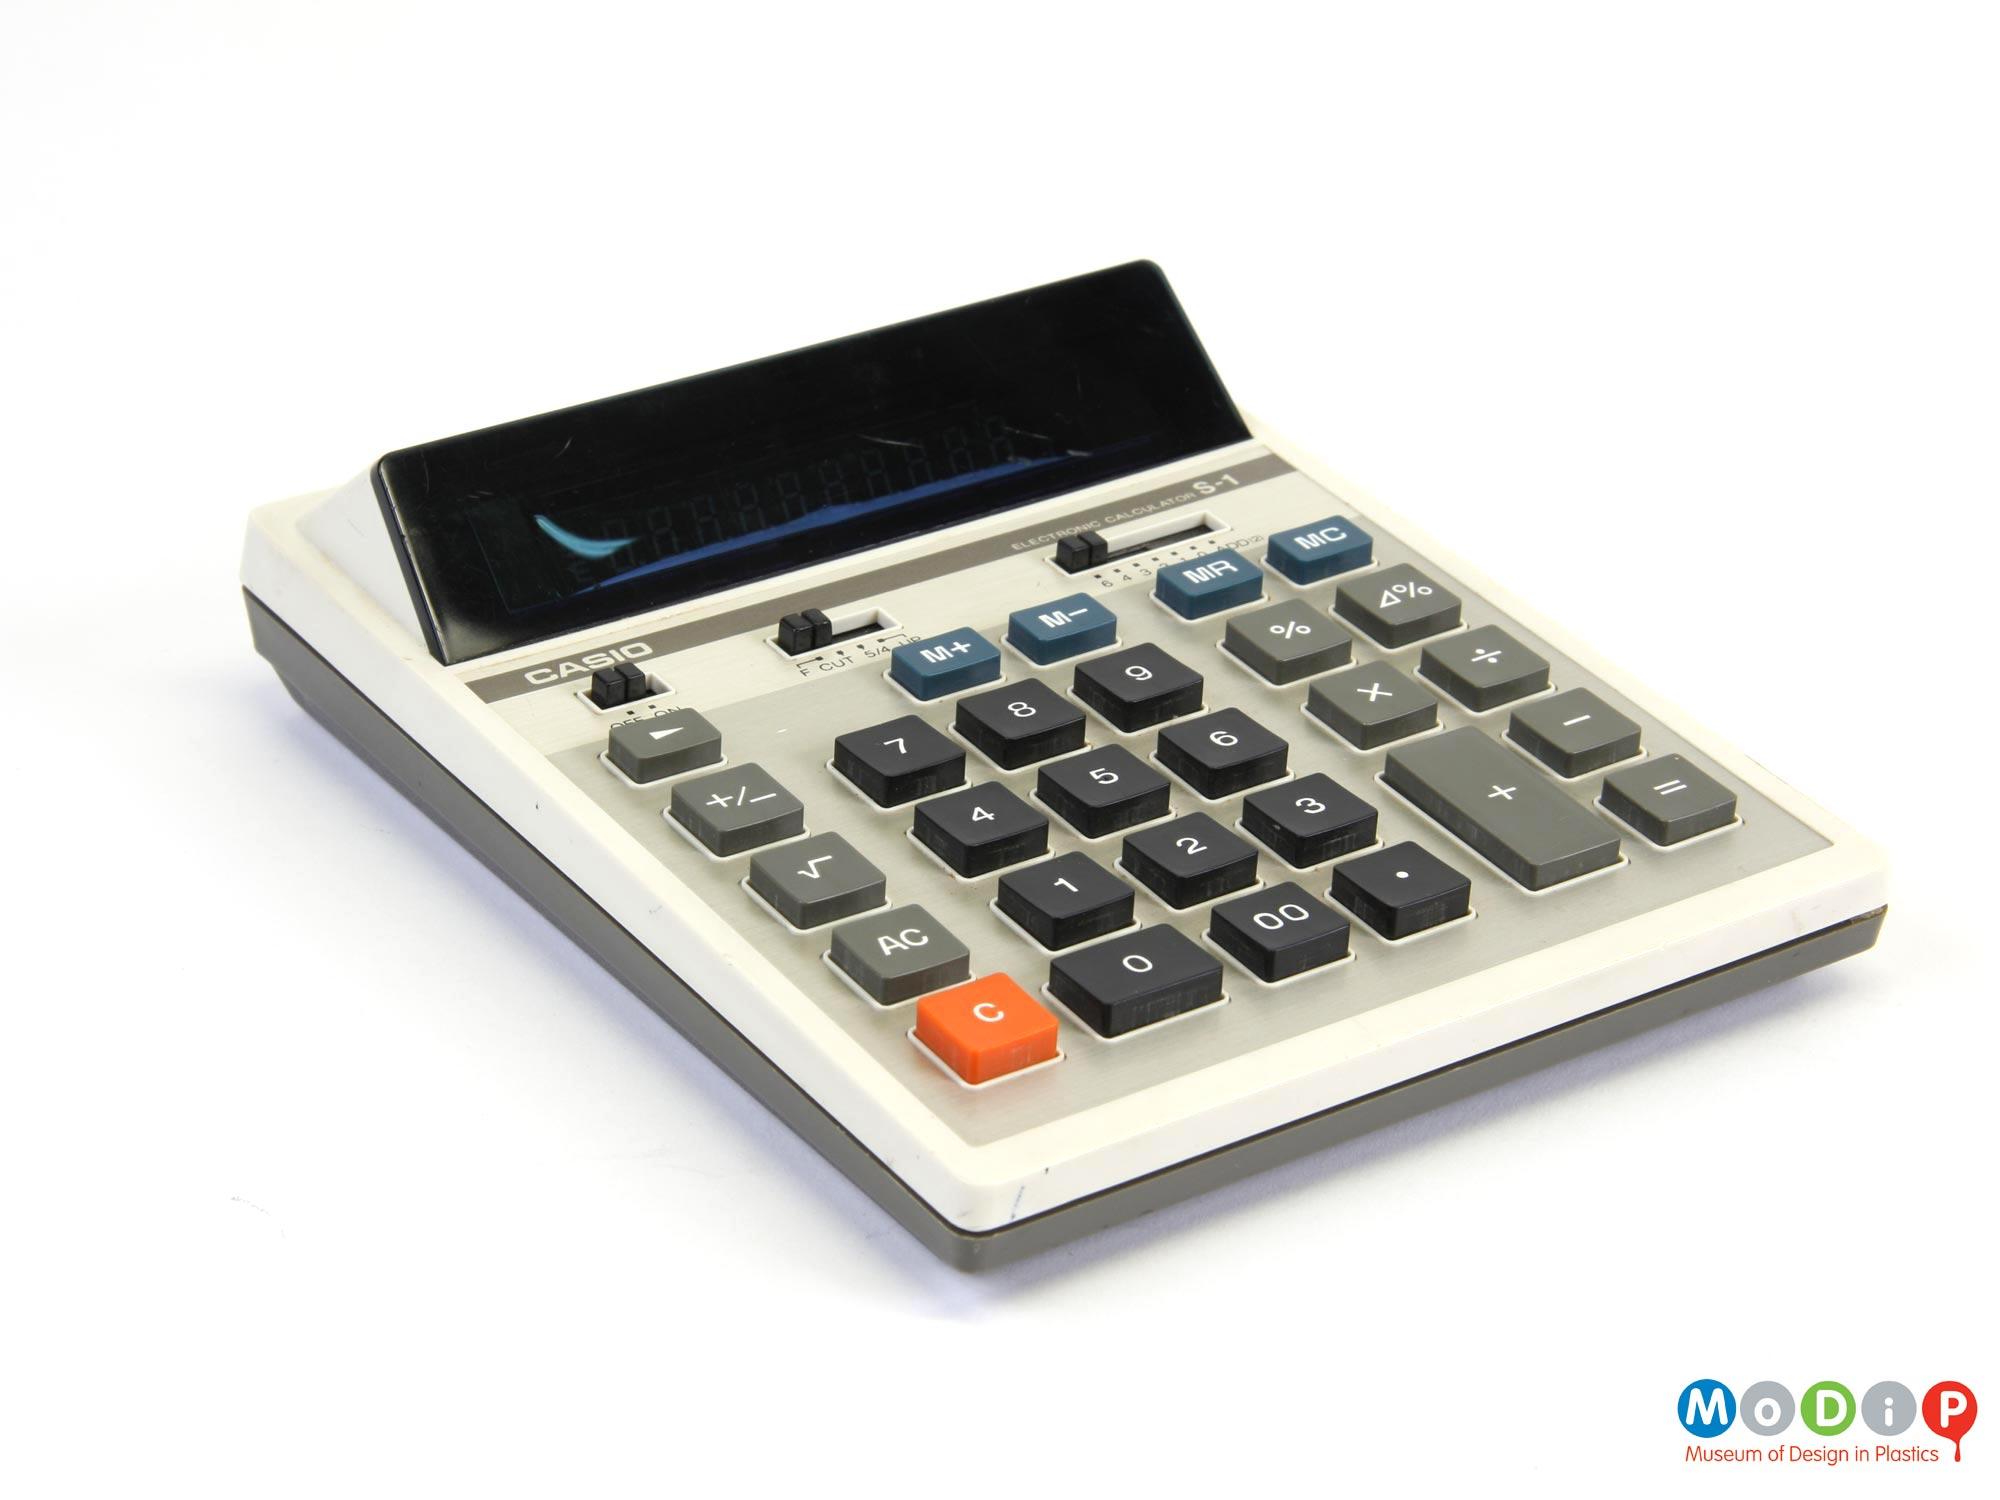 Casio Electronic Calculator S-1 | Museum of Design in Plastics